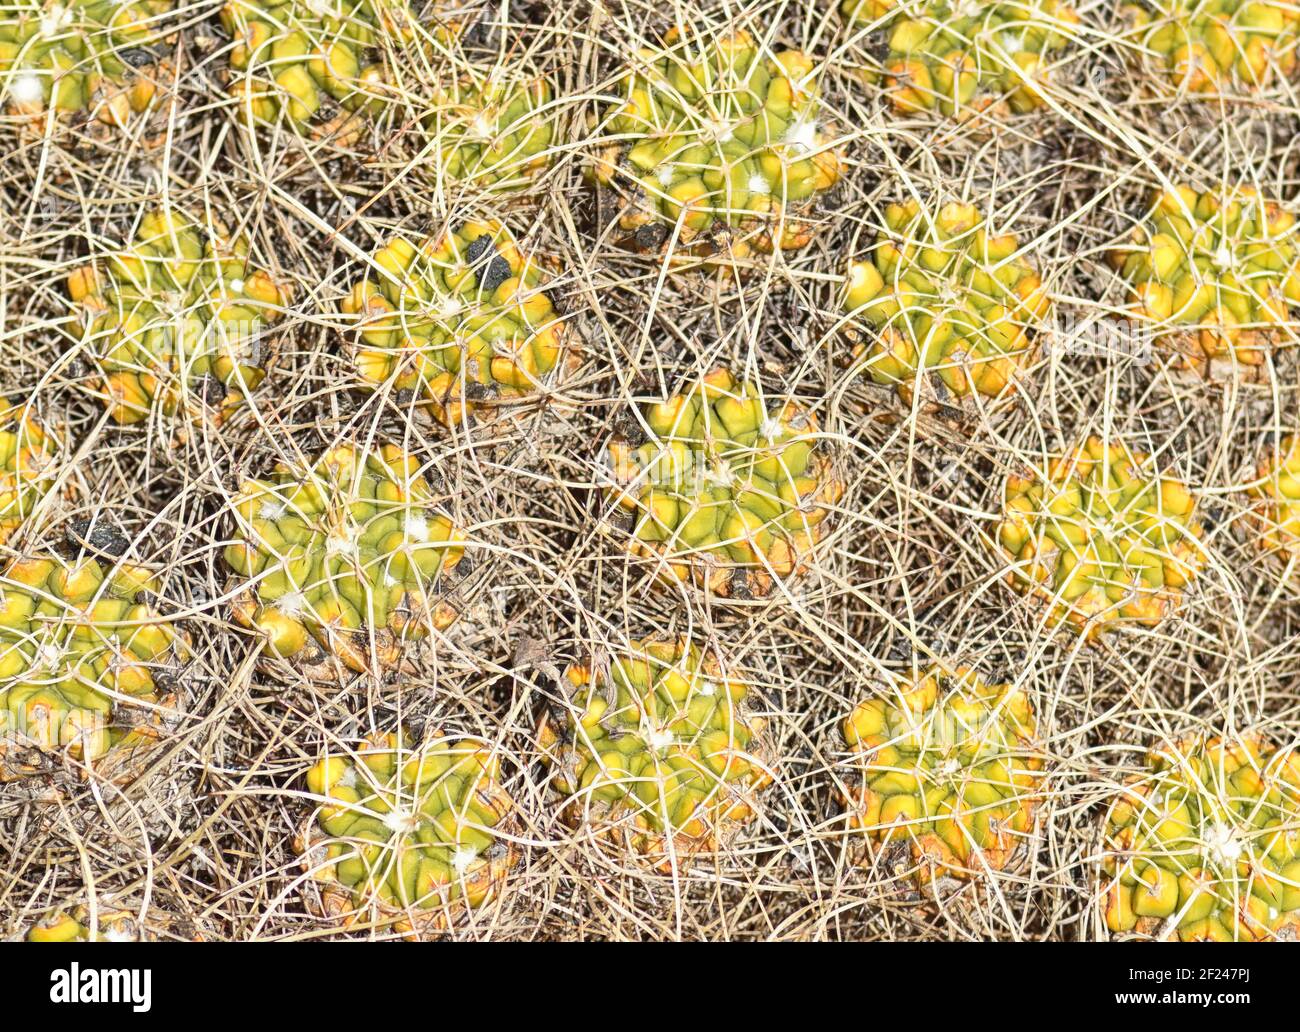 Mammillaria elongata ‘Cristata’ también se llama colorfully el cactus del cerebro debido a su crecimiento enrevesado y sinuoso. Foto de stock